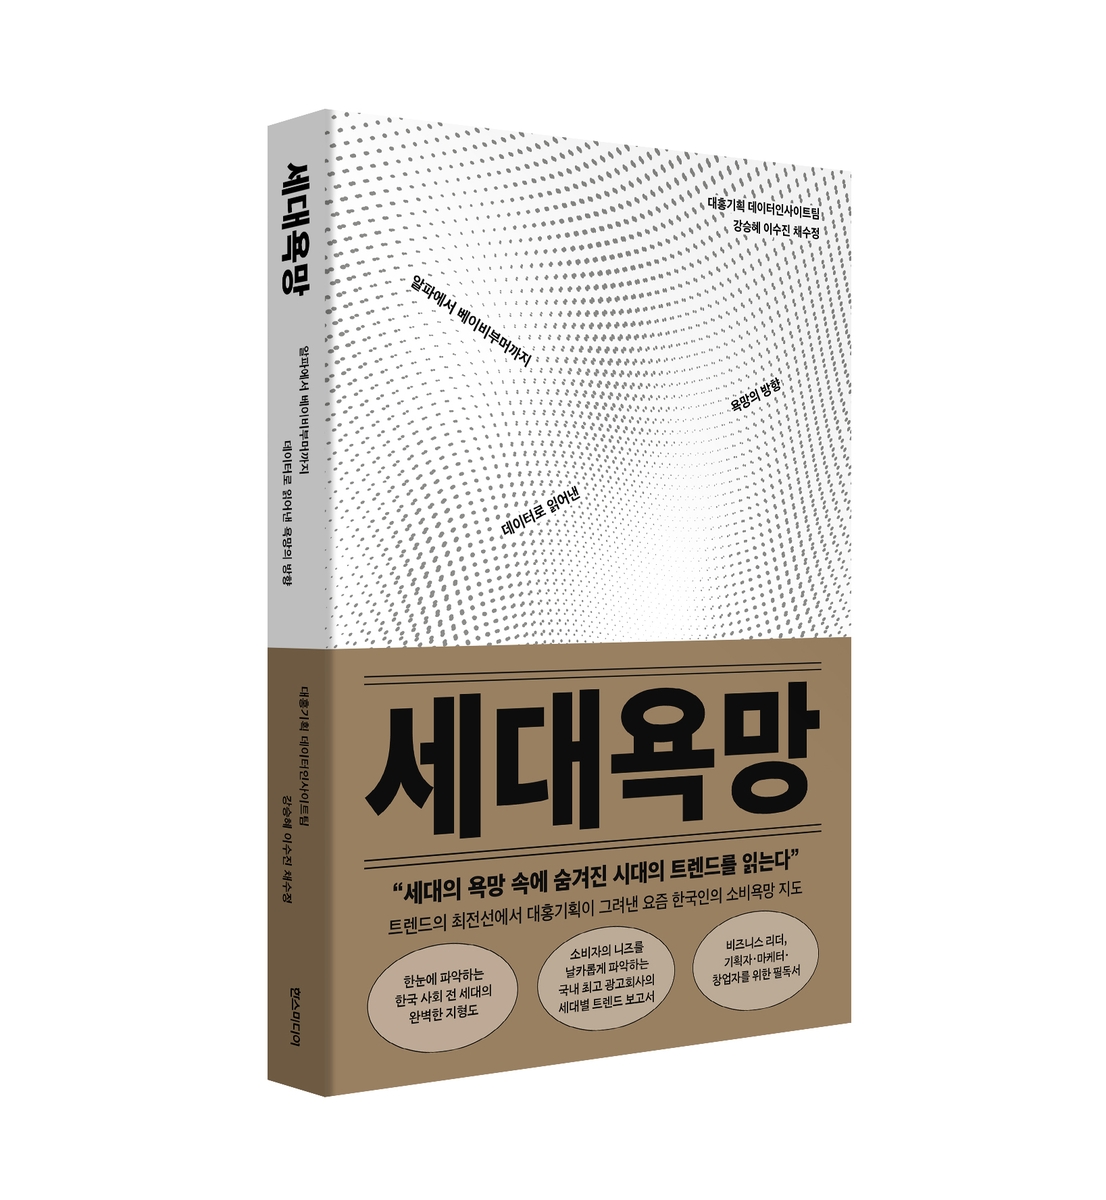 대홍기획, 세대별 소비동기 분석 '세대욕망' 발간